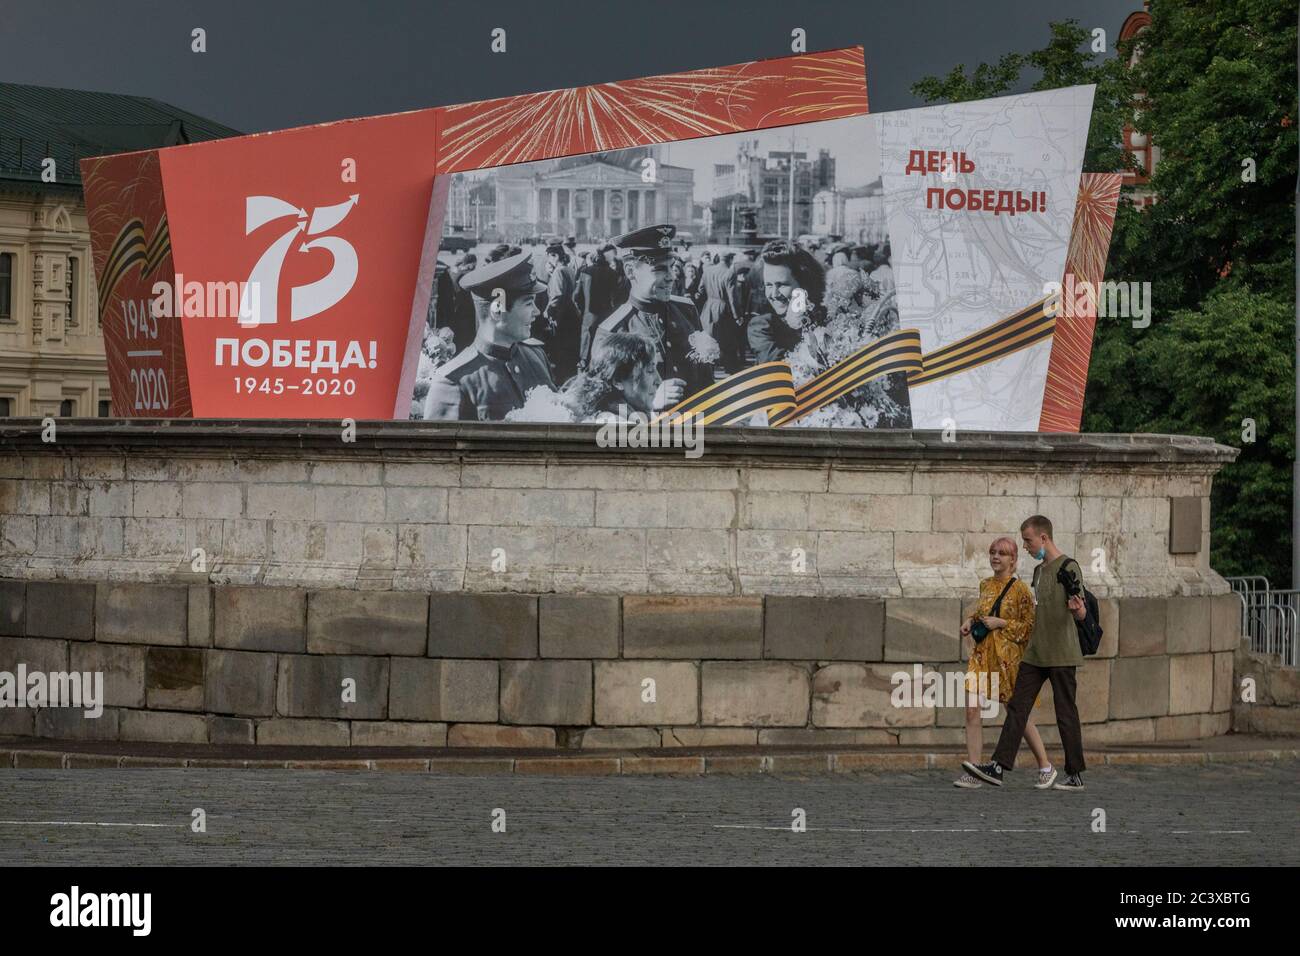 Moskau, Russland. 19. Juni 2020 DIE Dekoration des Roten Platzes im Zentrum Moskaus, die der Militärparade anlässlich des 75. Jahrestages des Sieges über Nazi-Deutschland im Großen Vaterländischen Krieg 1941-1945 gewidmet ist. Paraden des Siegestages in ganz Russland wurden vom 9. Mai auf den 24. Juni verschoben, da im Zusammenhang mit der Pandemie des neuartigen Coronavirus COVID-19 Beschränkungen auferlegt wurden Stockfoto